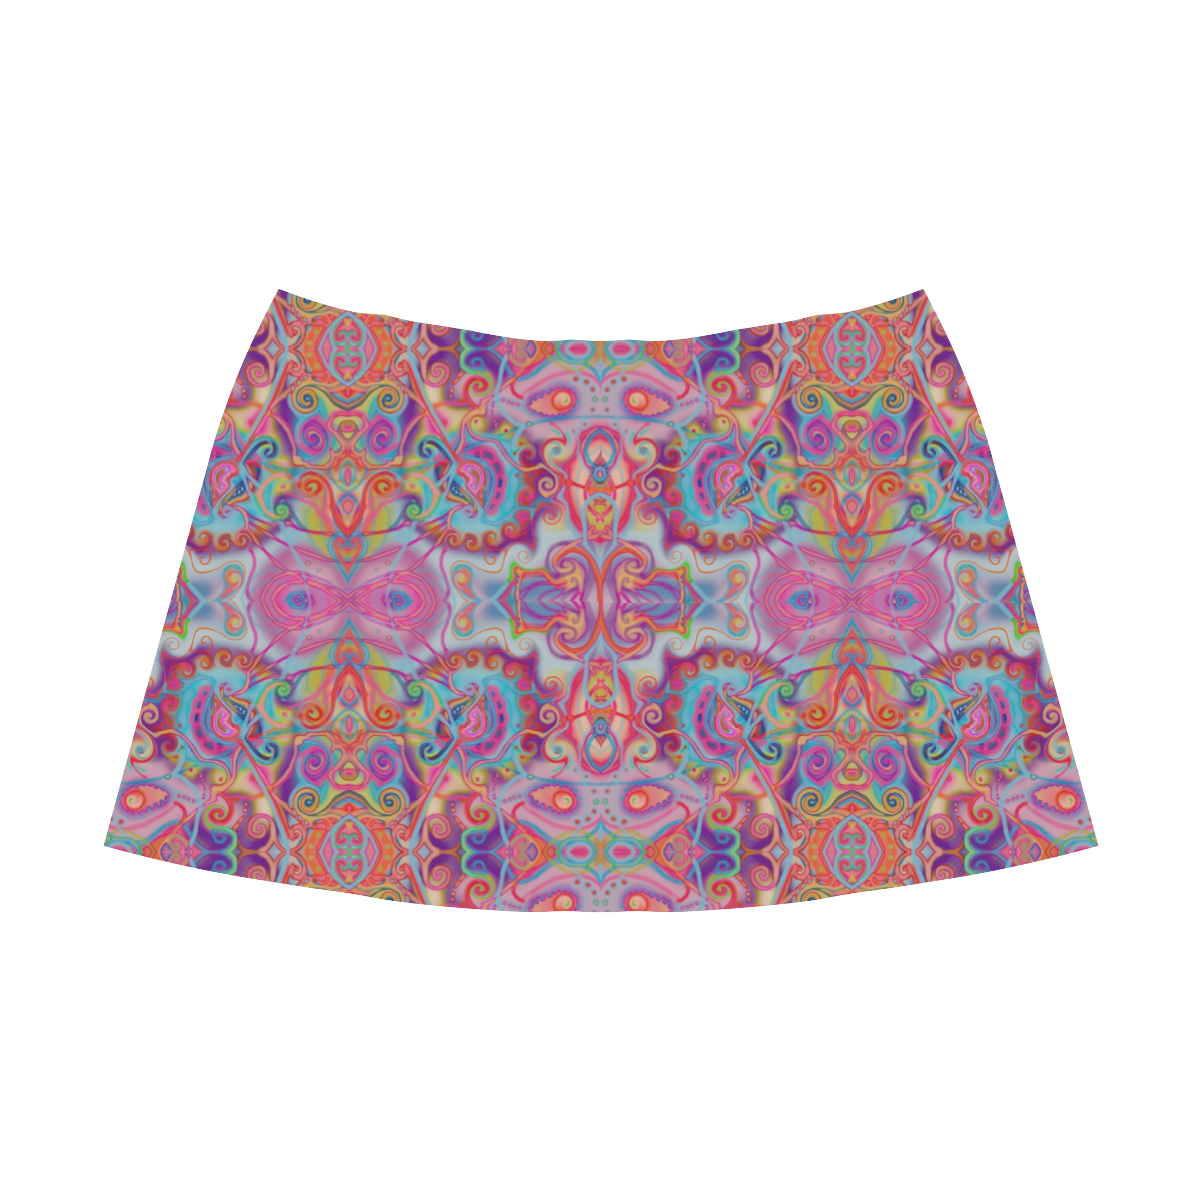 volutes 2 Mnemosyne Women's Crepe Skirt (Model D16)